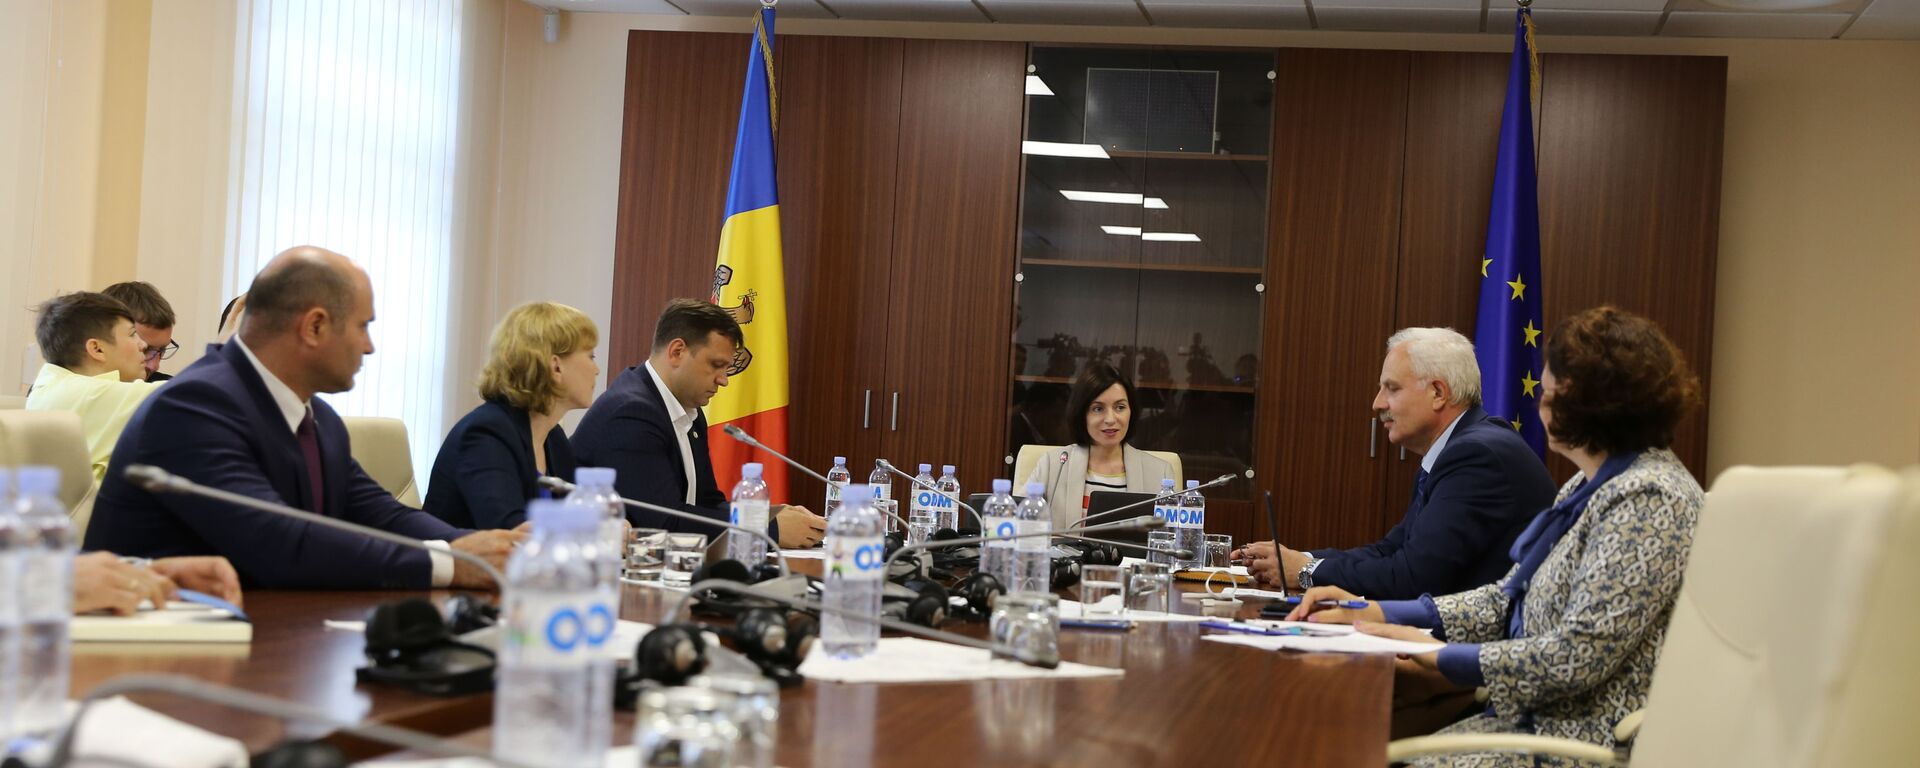 Prima ședință a Guvernului condus de Maia Sandu - Sputnik Молдова, 1920, 20.06.2019